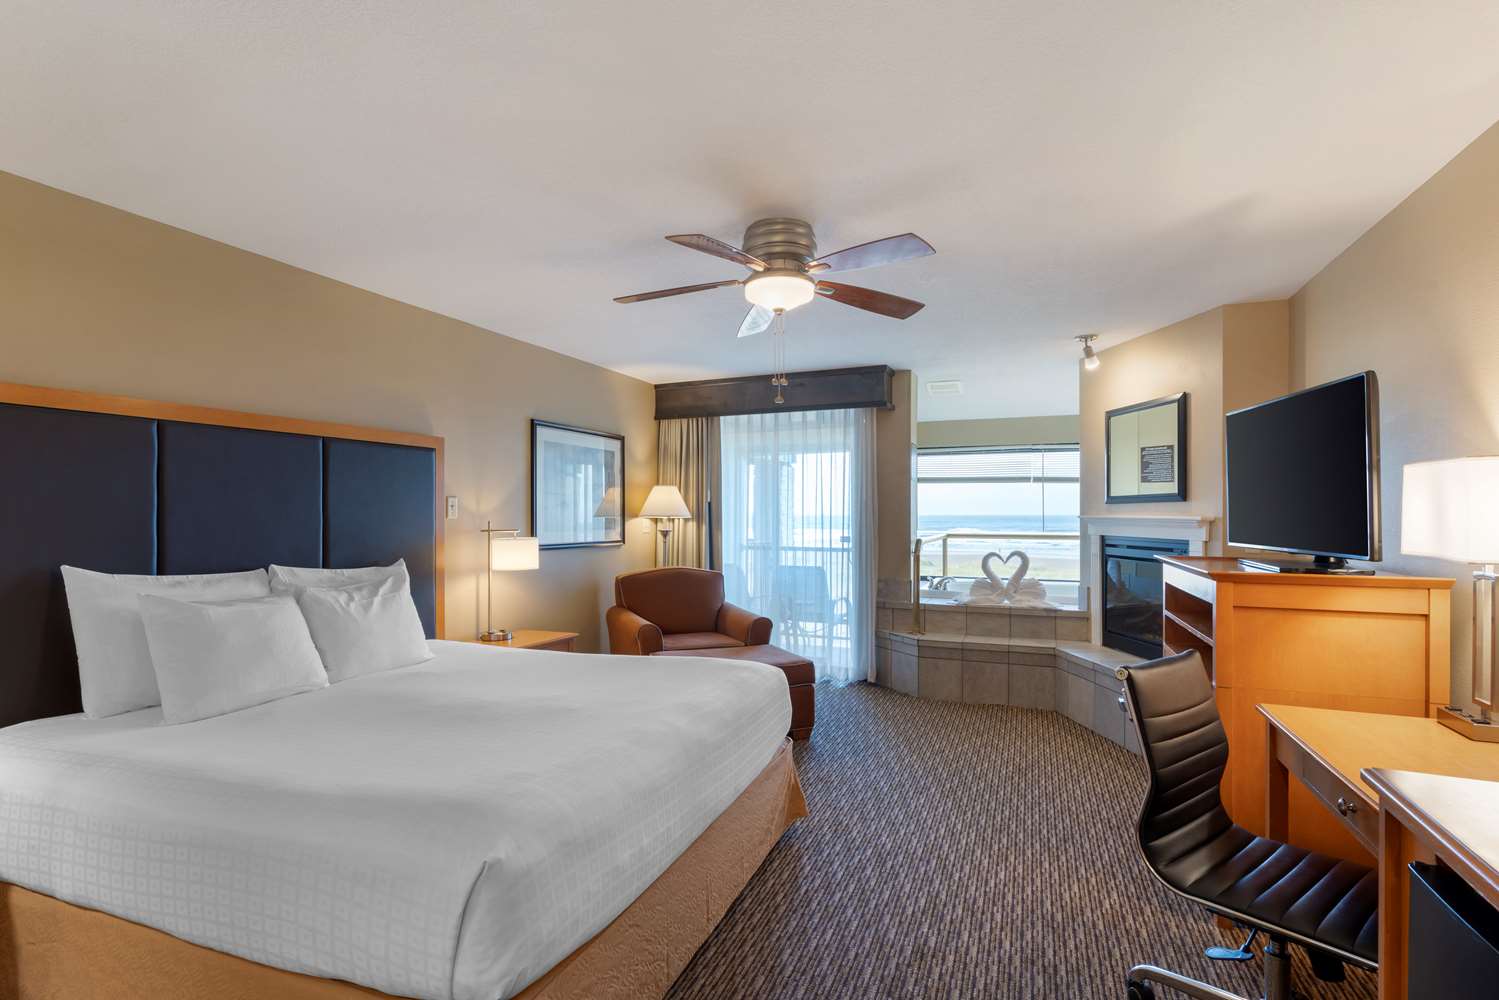 Fast Tame Sliping Roomeds X Videos - Hotel in Seaside | Best Western Plus Ocean View Resort